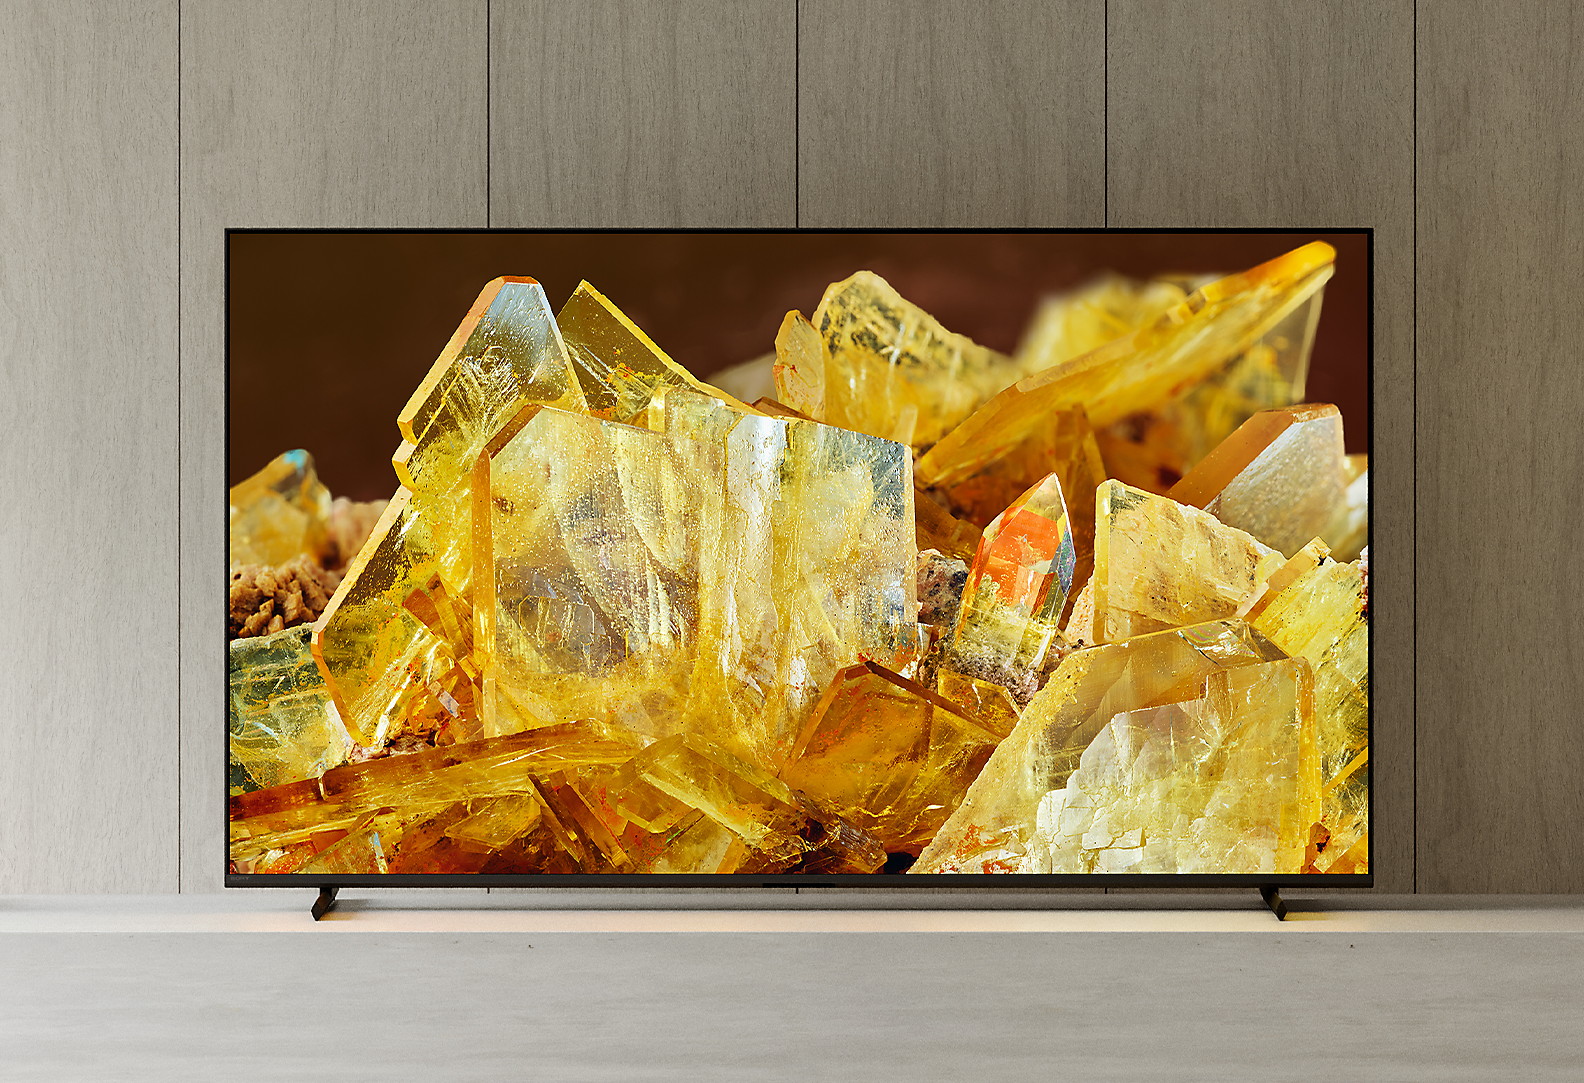 Televizor BRAVIA XR v obývacím pokoji s detailním snímkem jantarově zbarvených krystalů